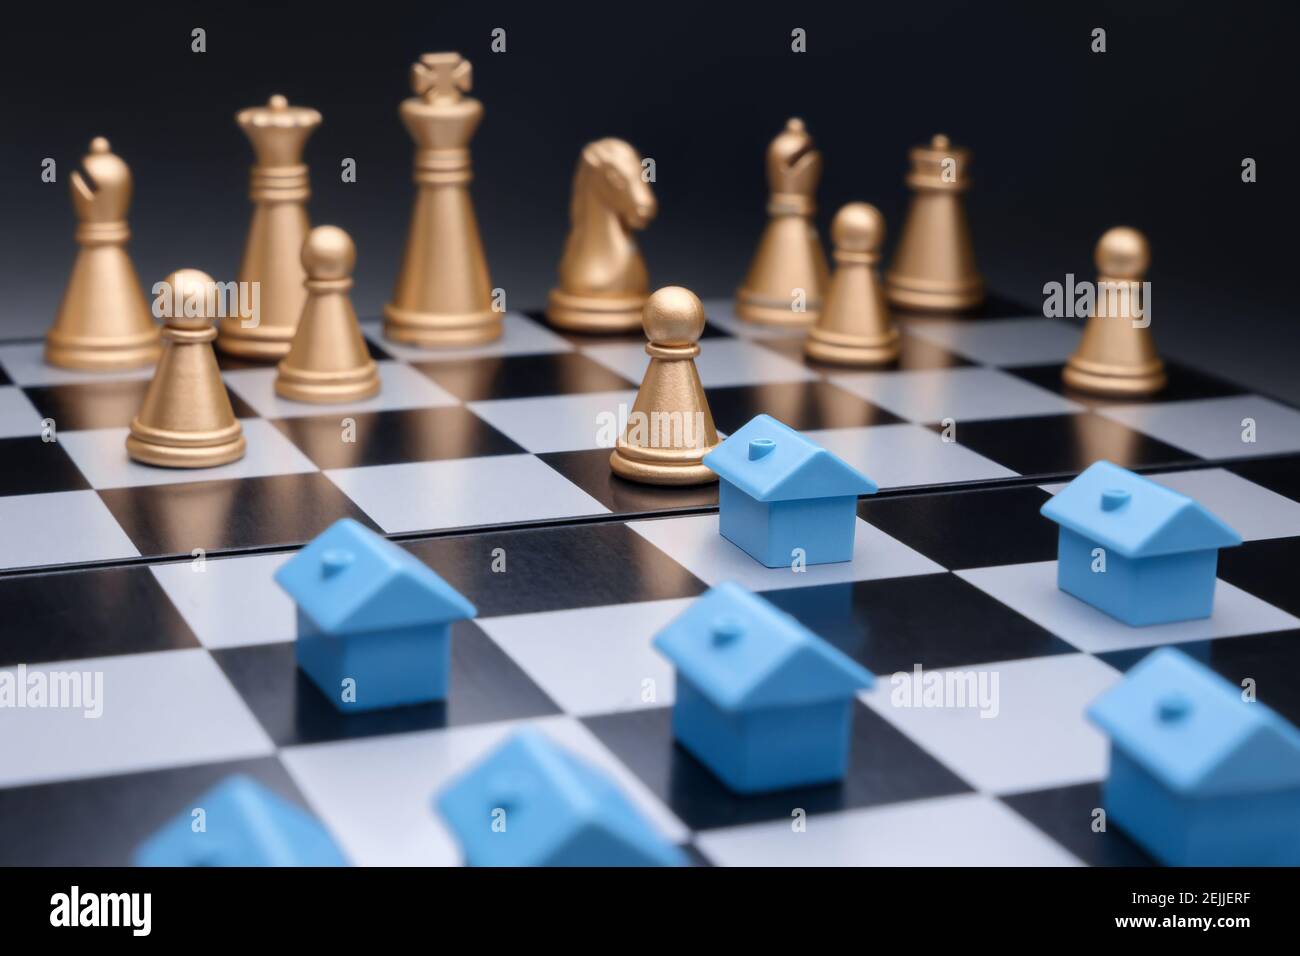 Blue miniature abrite la planification de la stratégie de développement de la propriété sur le plateau d'échecs. Gestion immobilière. Modèle maison immobilier stratégie d'affaires jeu d'échecs Banque D'Images